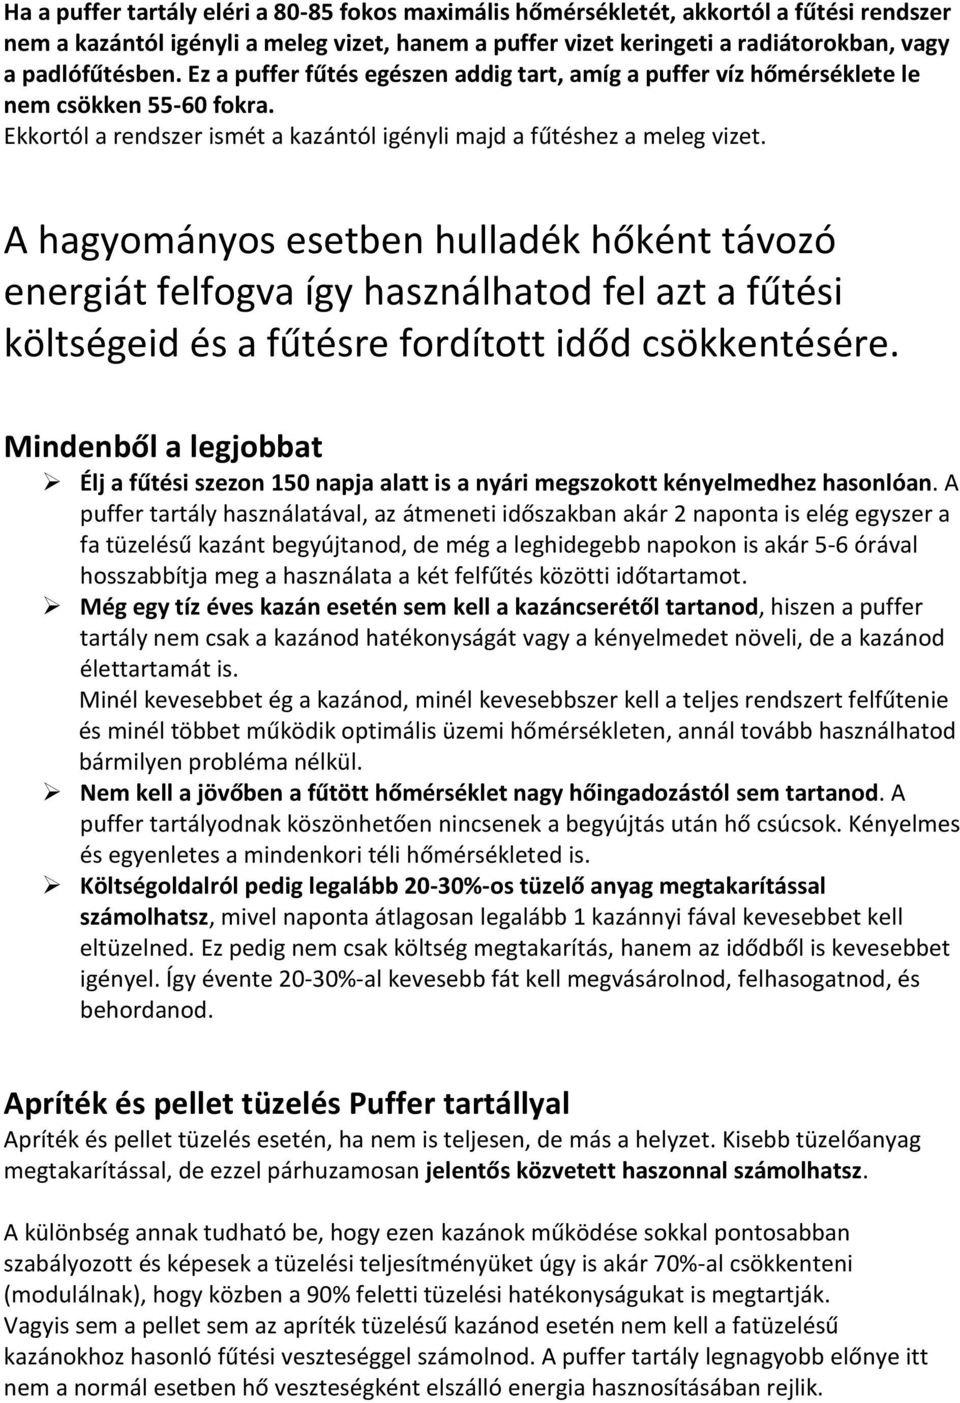 Puffer tartály kisokos - PDF Ingyenes letöltés